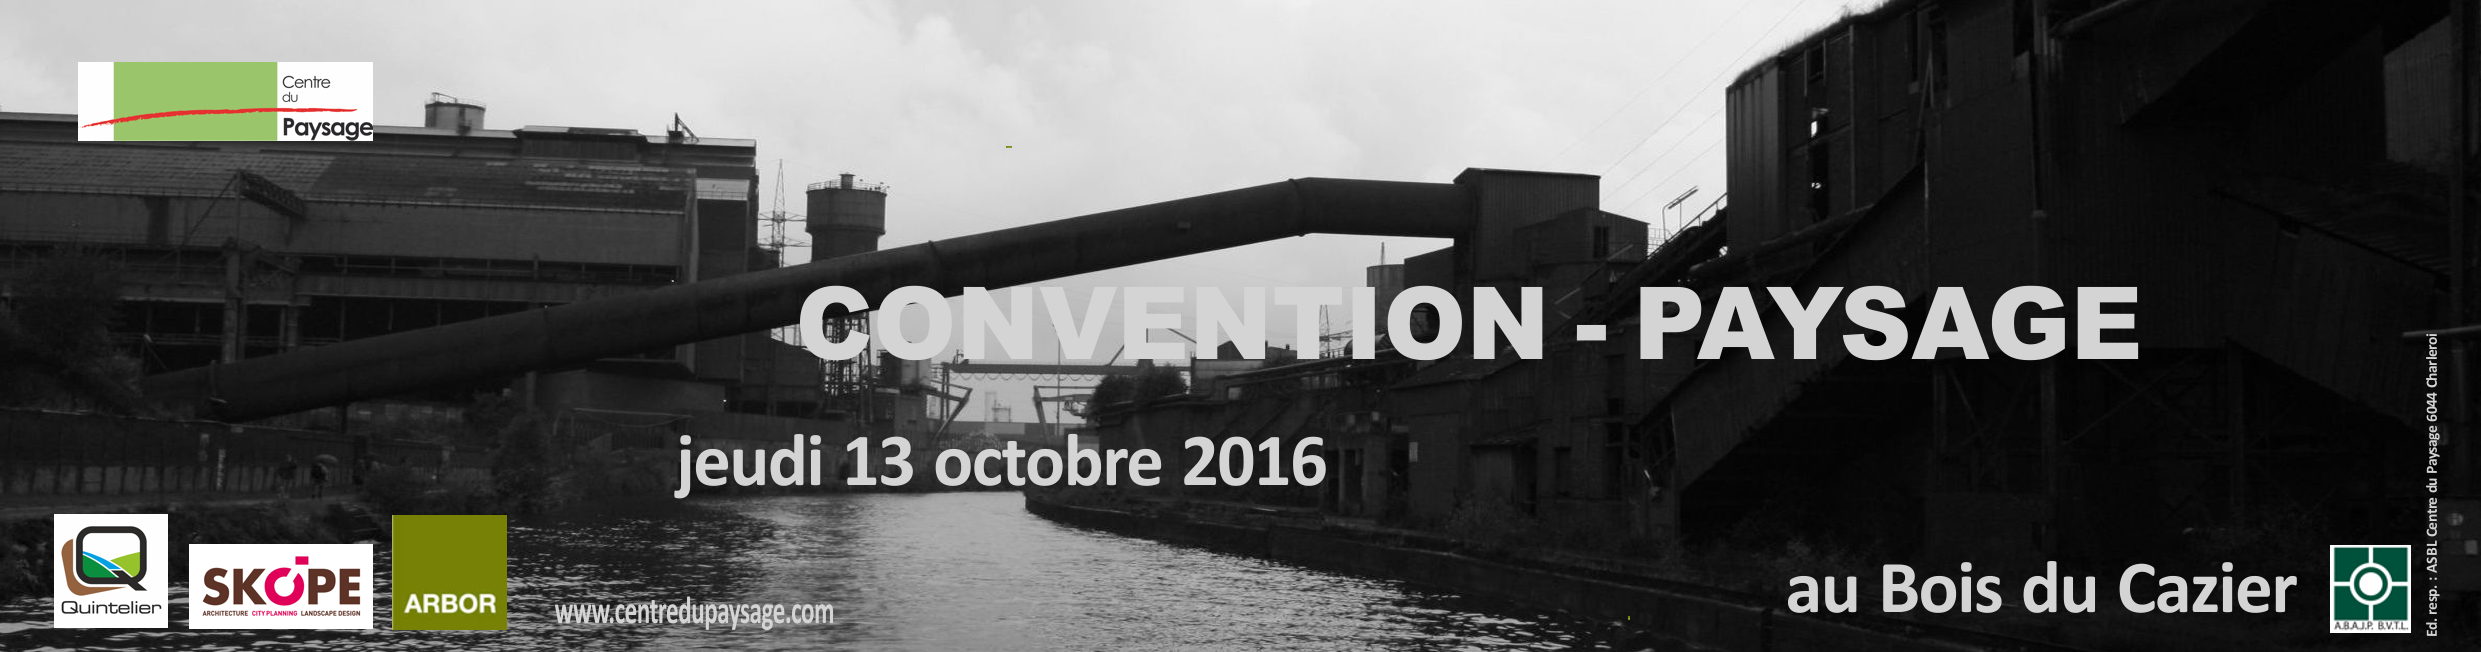 CONVENTION - PAYSAGE 13 octobre 2016 au Bois du Cazier (Marcinelle)  